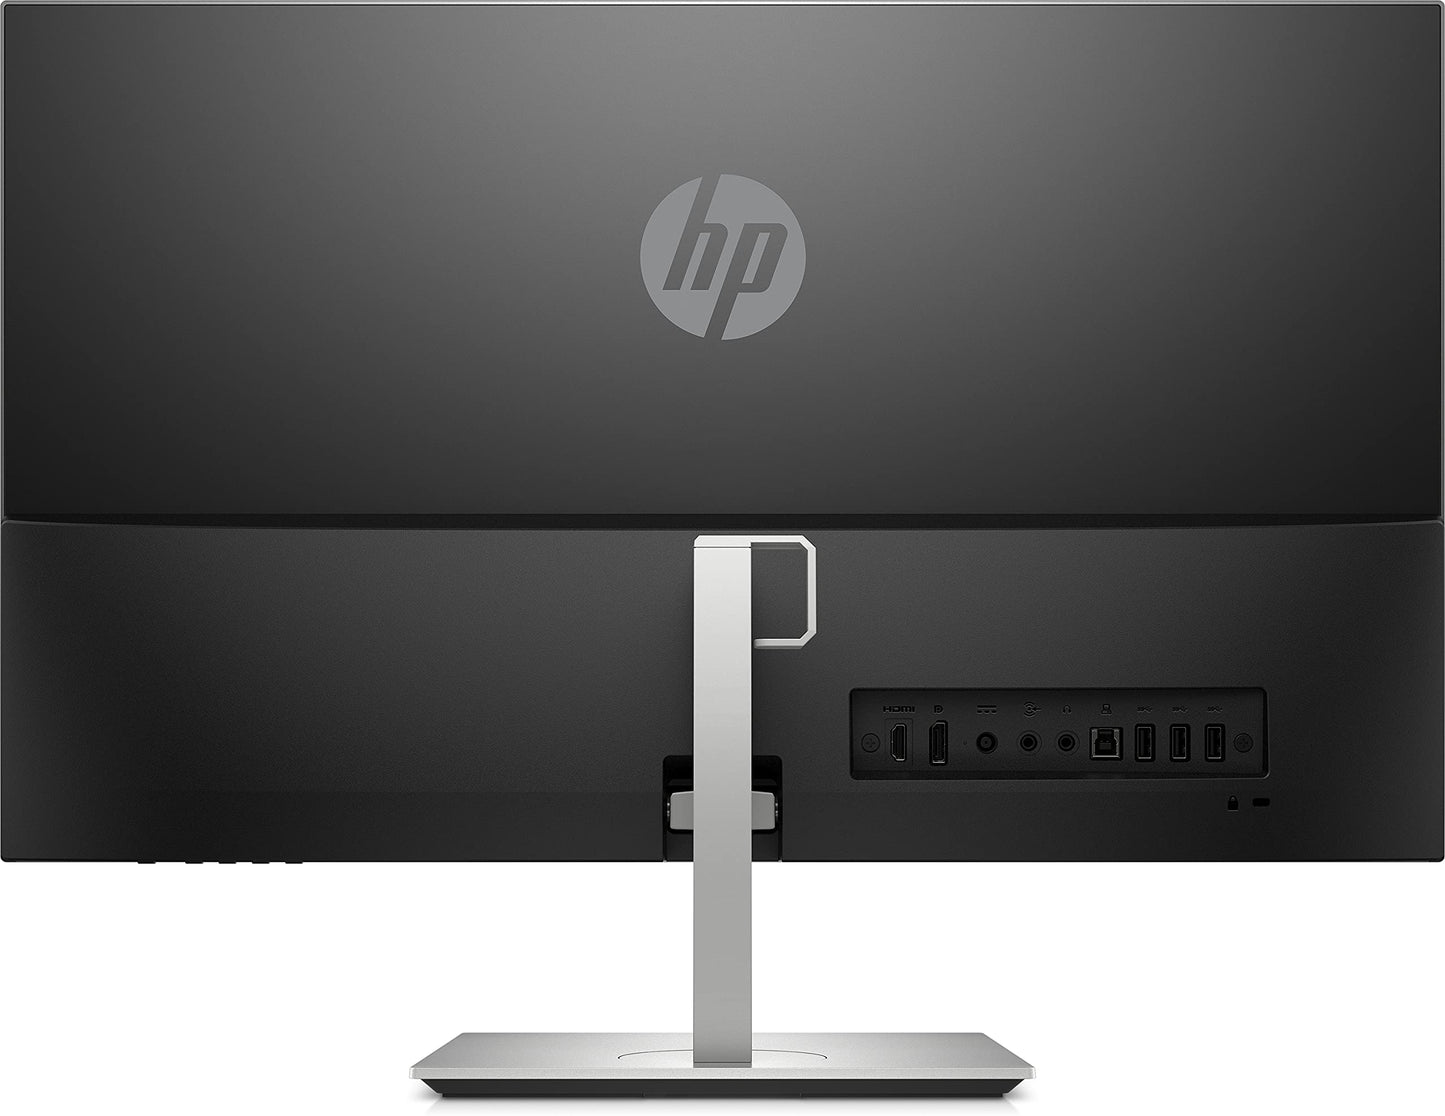 HP U27 4K Wireless Monitor, Wireless sharing, 4k (3,840 x 2160), 27 Inch, IPS, Height Adjustable Stand, VESA Mount, (1 DisplayPort, 1 HDMI, 3 USB-A Ports) - Silver/Black